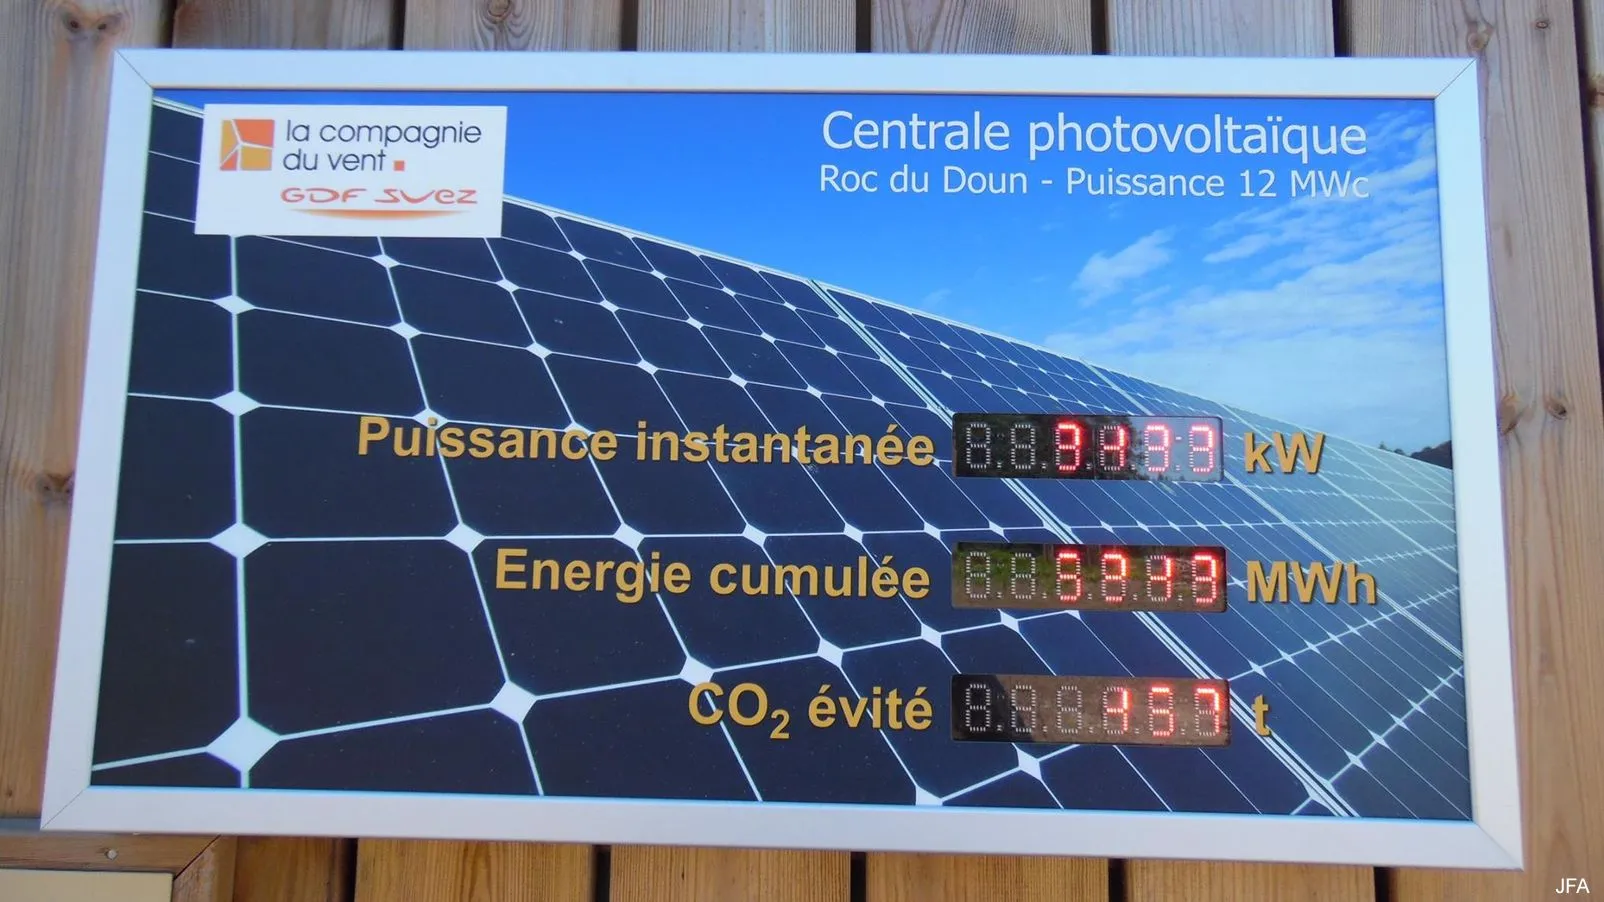 Corrèze découverte - Photo N° 2 - Le parc photovoltaïque de Gros-Chastang - 19320 - Gros-Chastang - Panoramas & Grands espaces - Quelques pas - Autour de vous